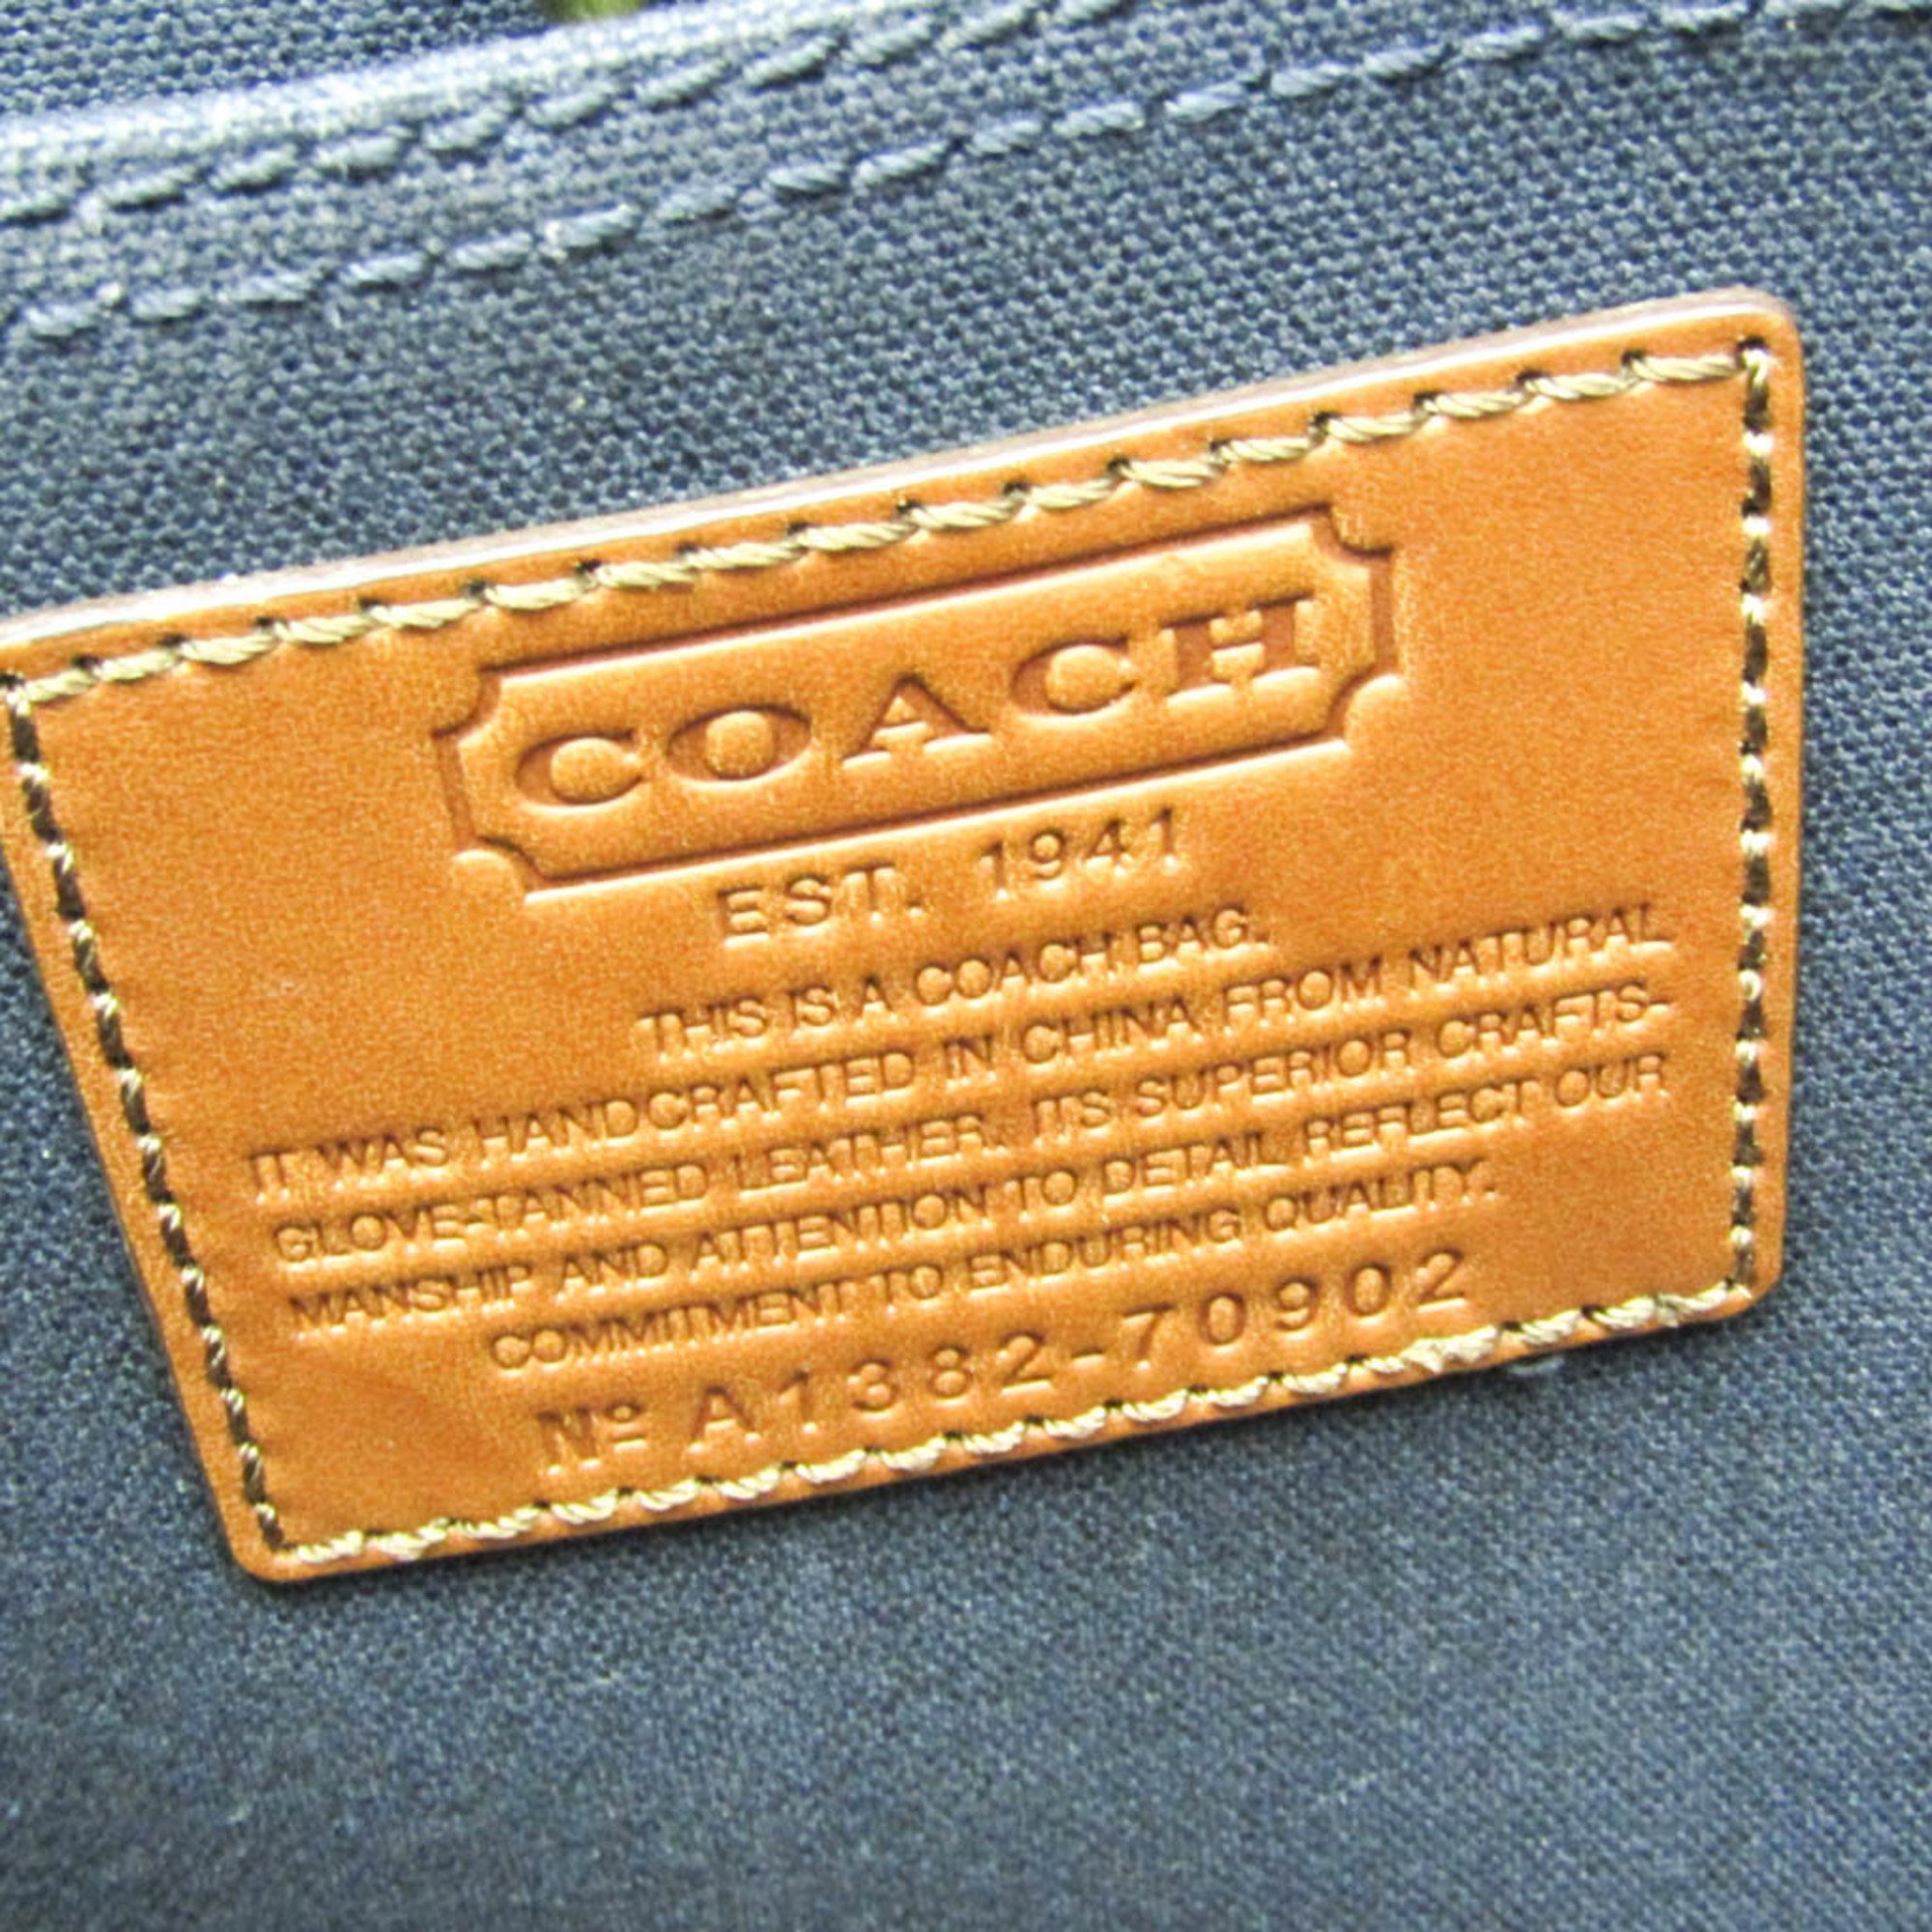 Coach COACH×Saint James 70902 Women,Men Canvas,Leather Tote Bag Brown,Navy